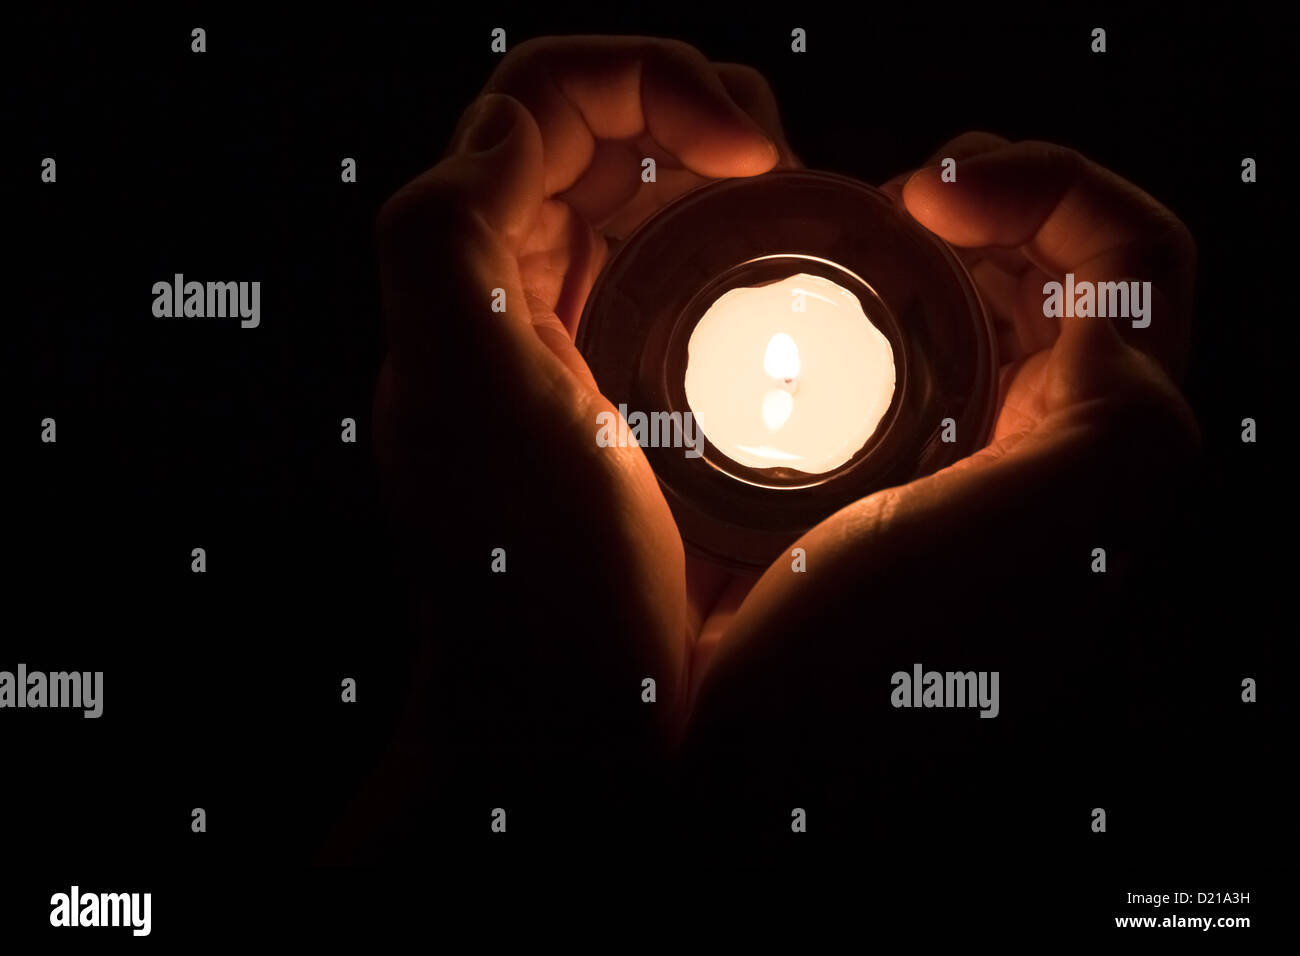 Mani in forma di cuore intorno a una candela accesa. Foto Stock